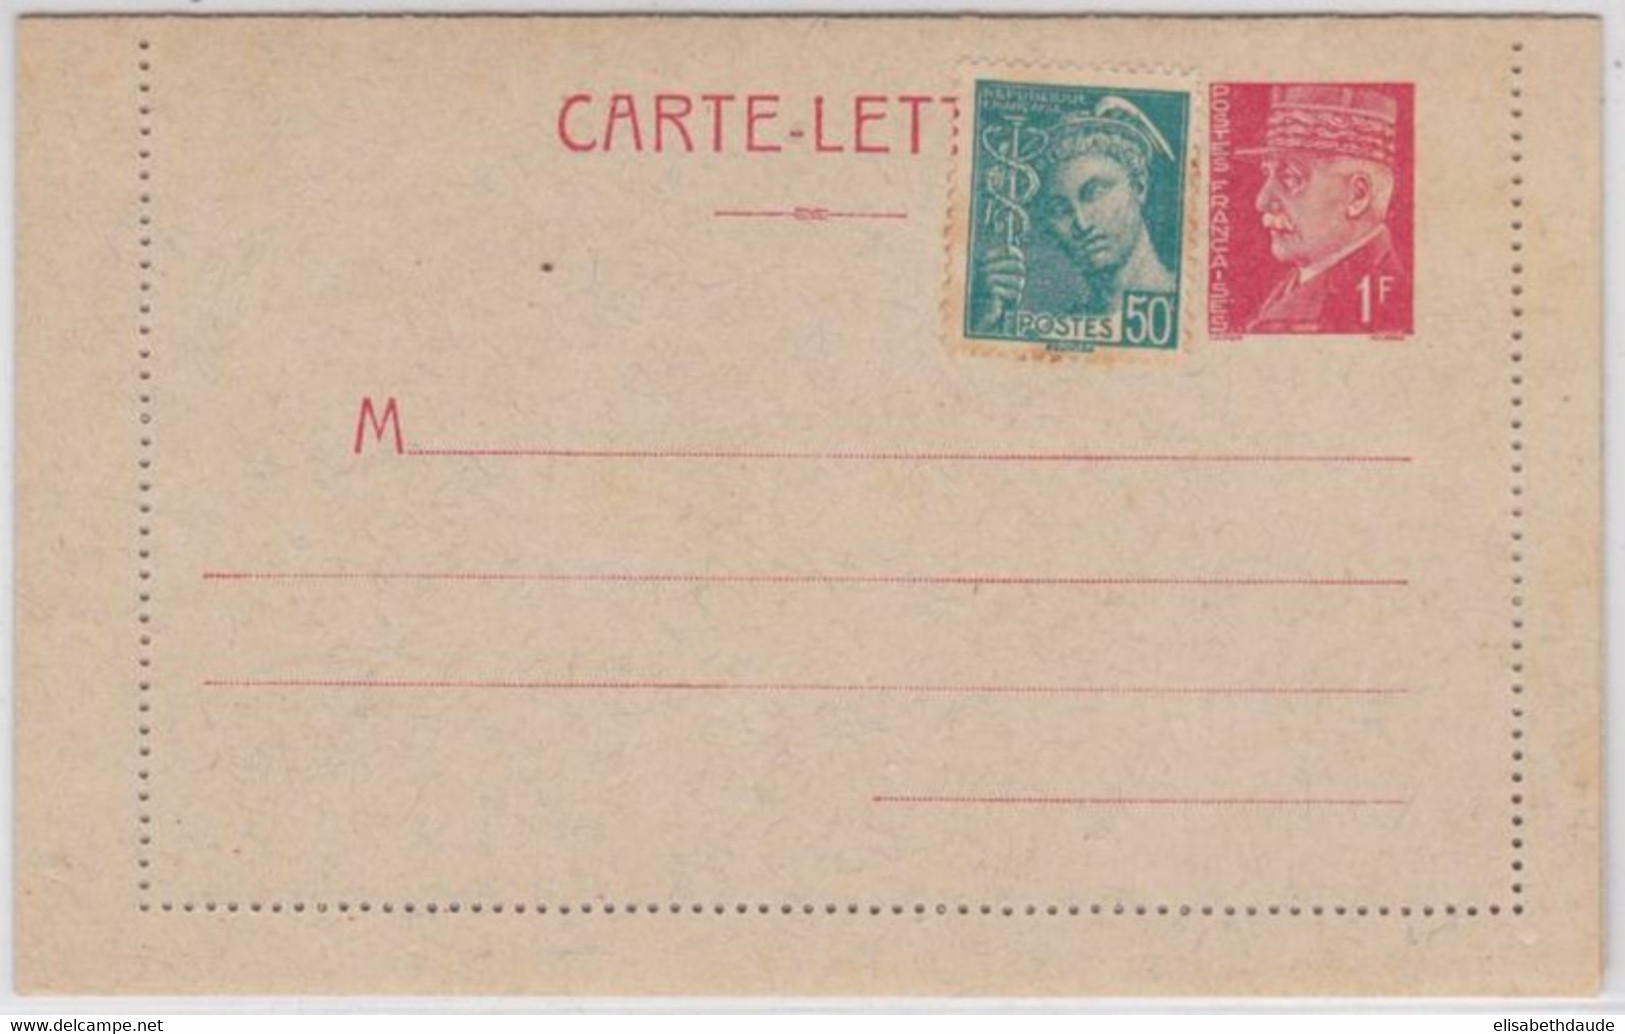 1941 - TYPE PETAIN - CARTE LETTRE ENTIER NEUVE COMPLEMENT MERCURE - STORCH C1 - COTE = 45 EUROS - Cartes-lettres